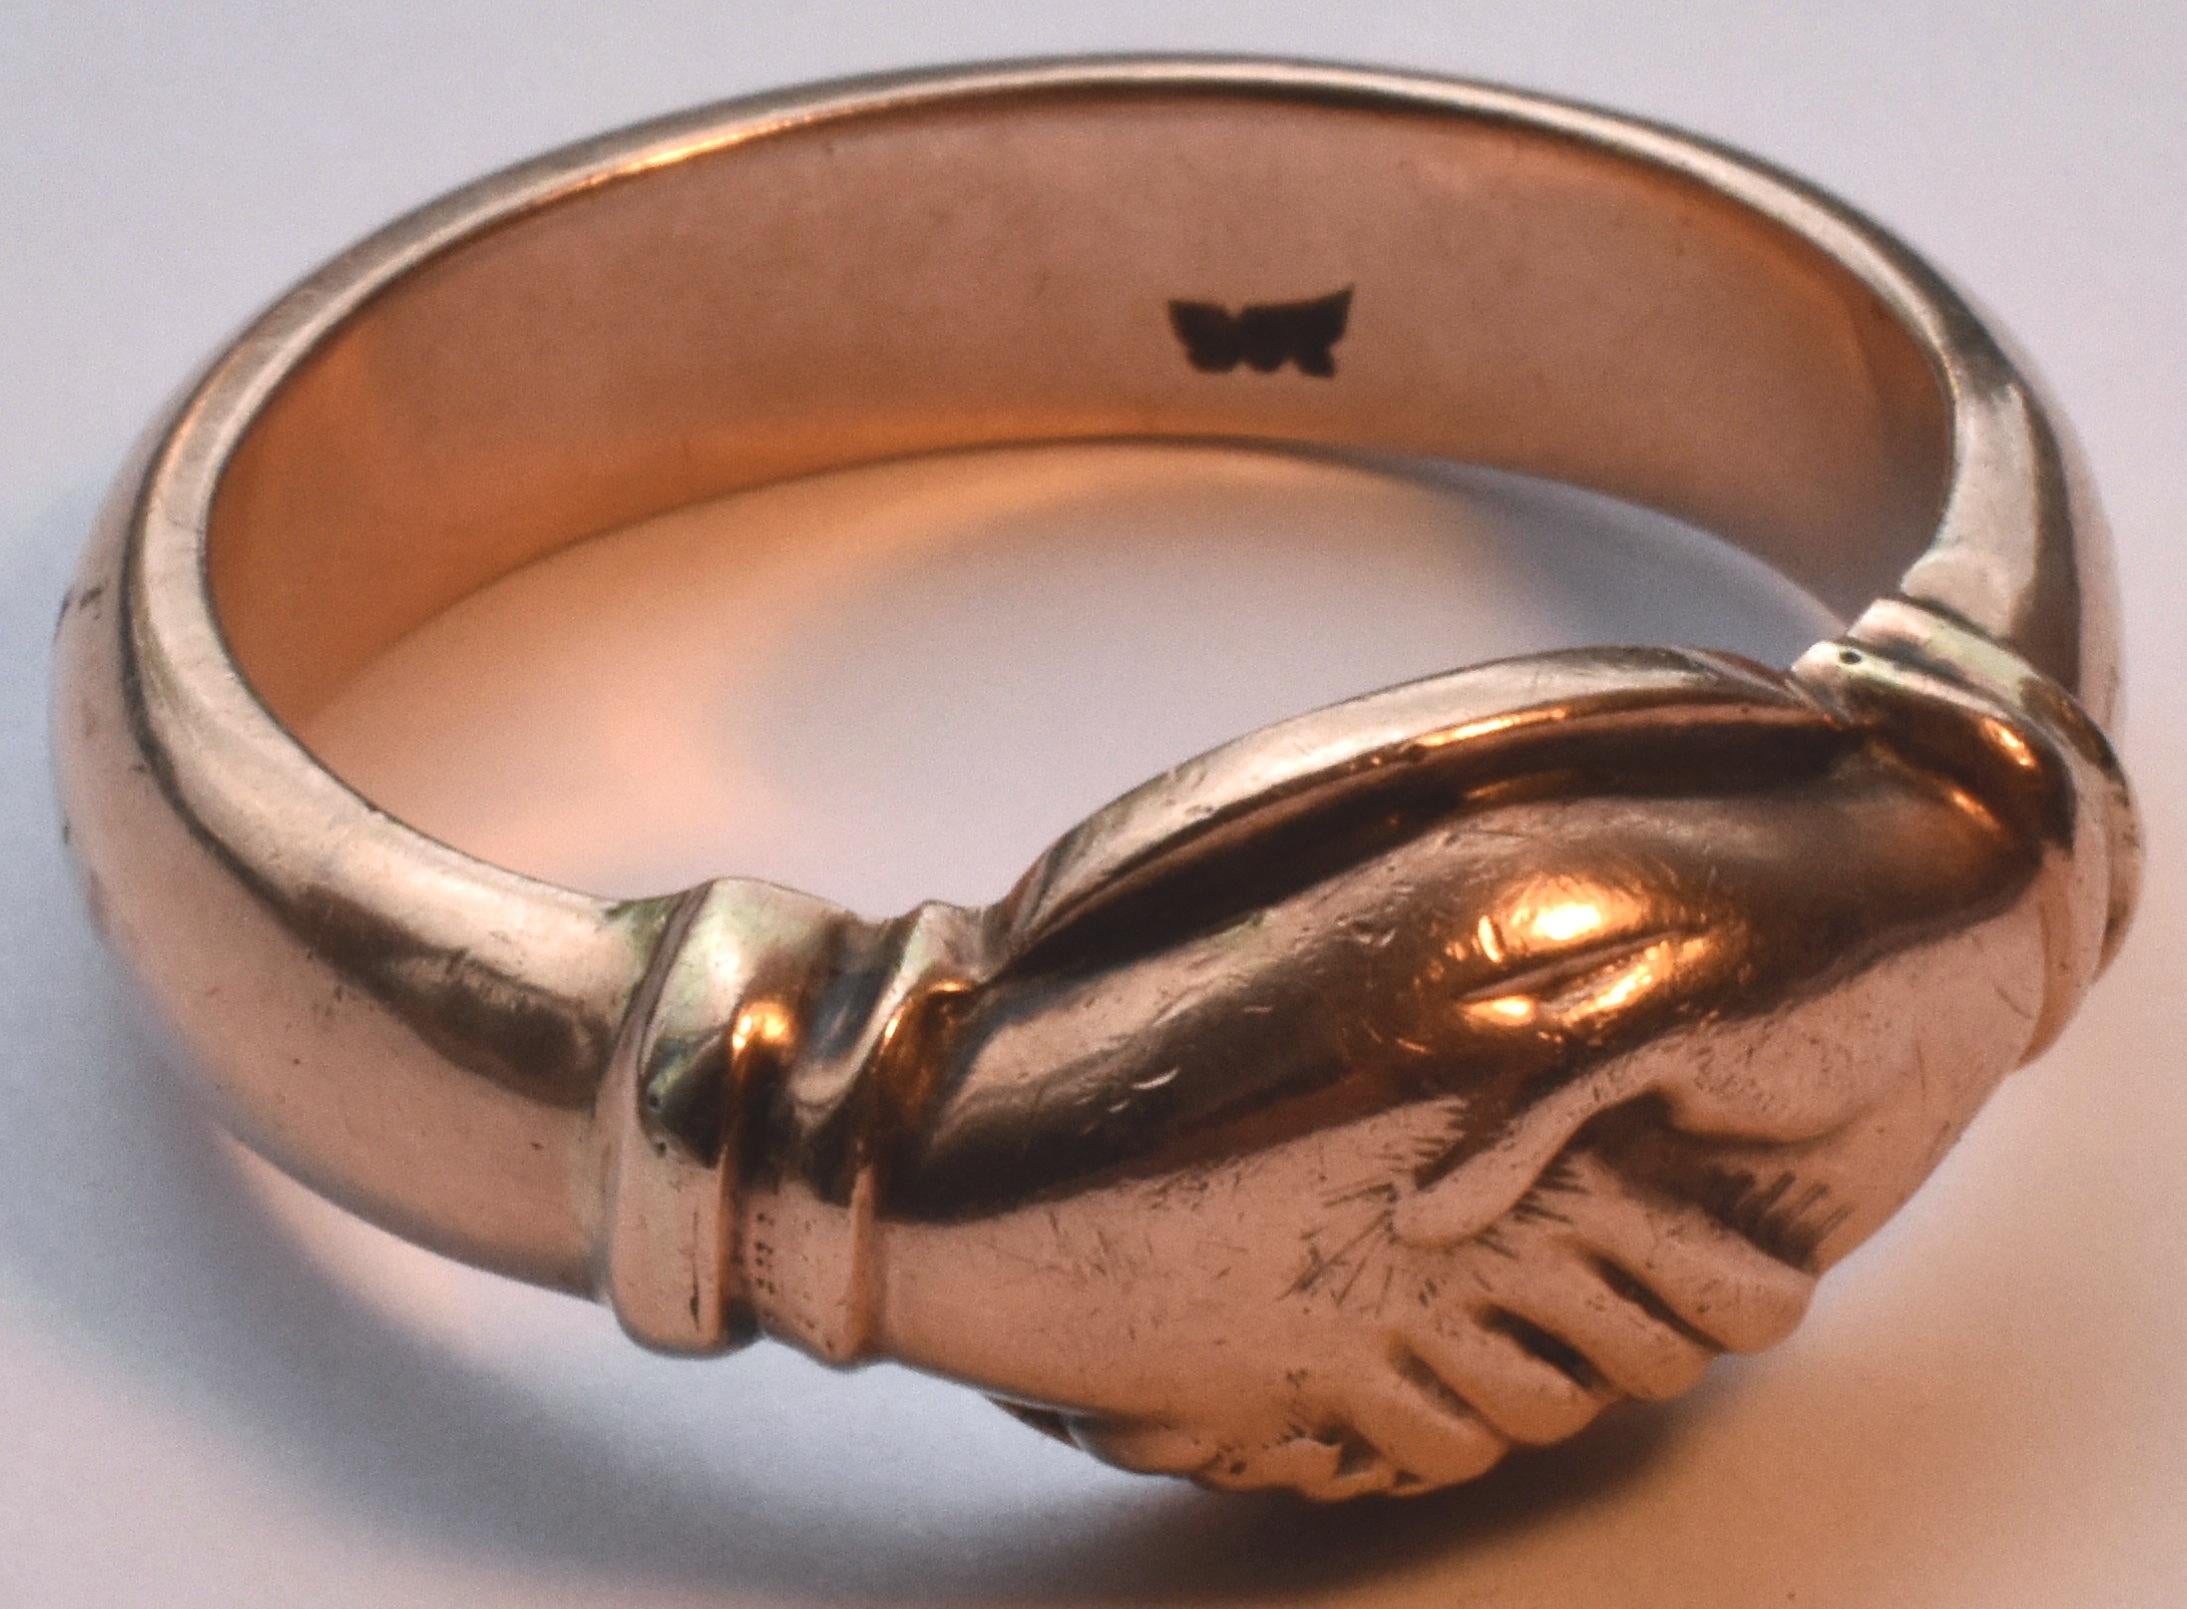 Wunderschöner Fede-Ring aus 9 K Roségold mit zwei in Freundschaft oder Verlobung verschränkten Händen. Fede, italienisch für 